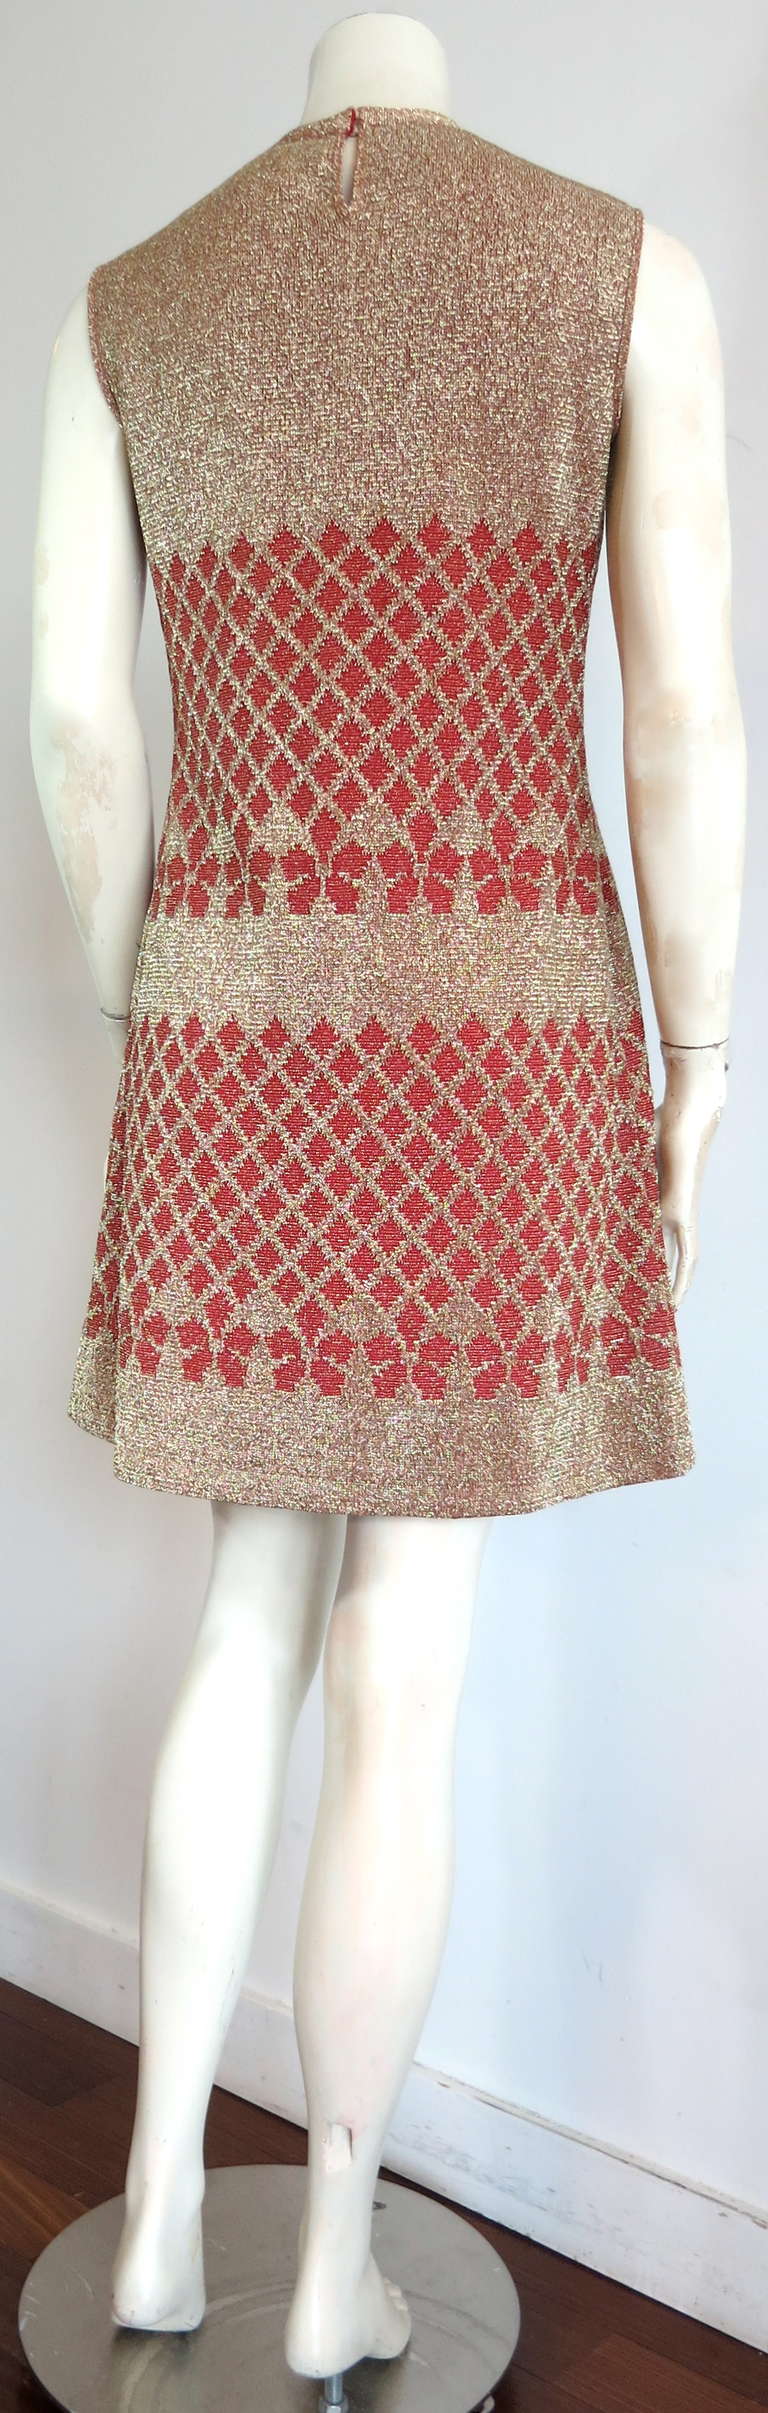 Women's 1960's PIERRE BALMAIN Metallic tricot knit dress